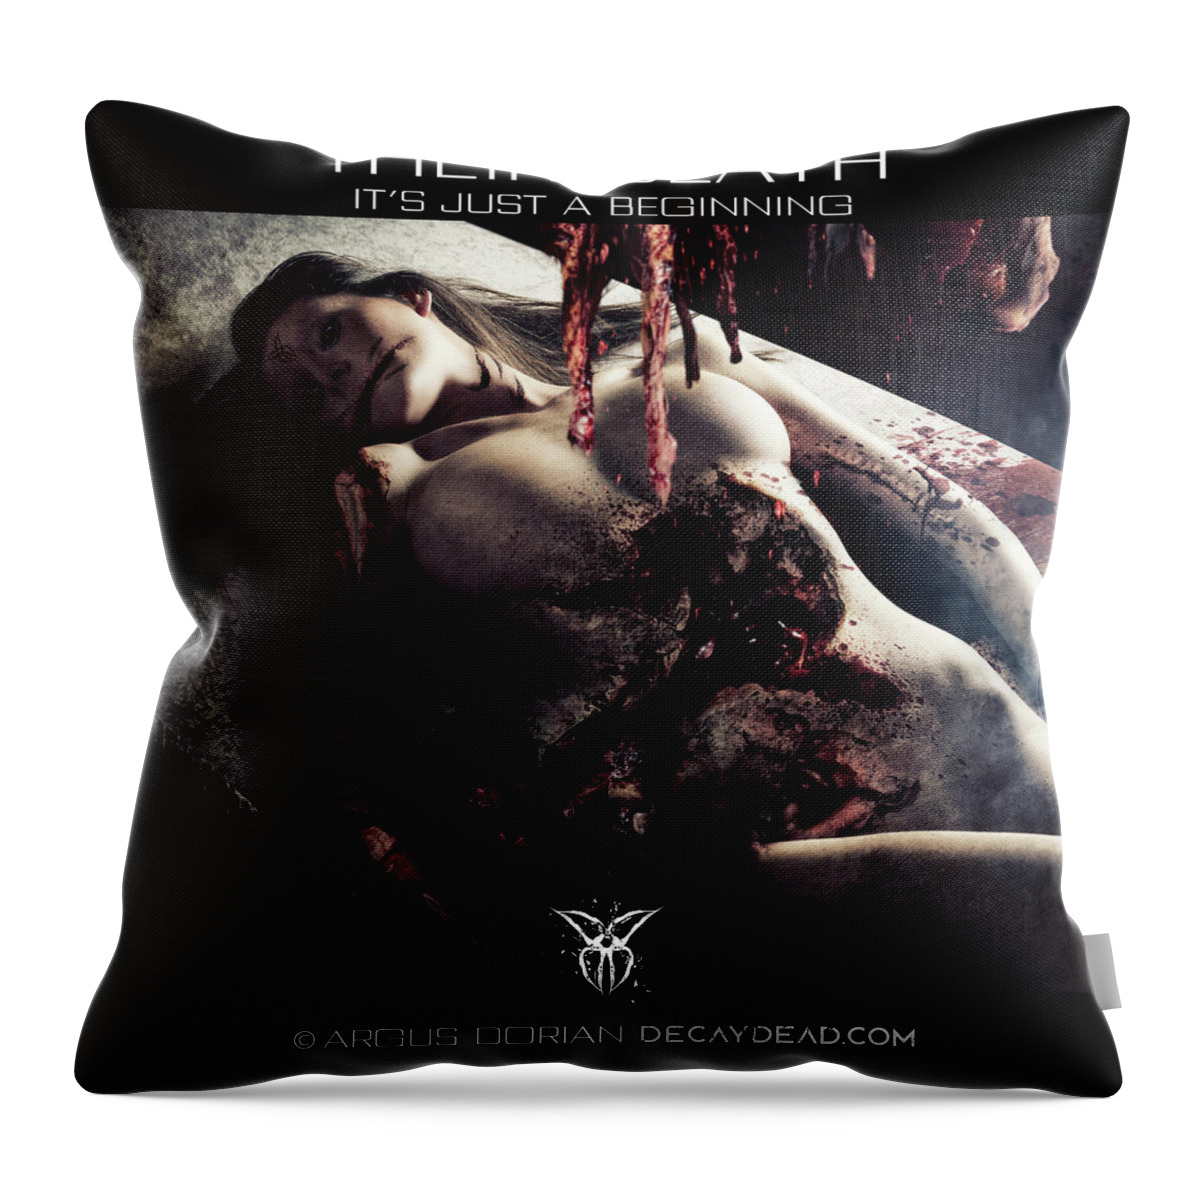 Dark Art Throw Pillow featuring the digital art Their death its just a beginning by Argus Dorian